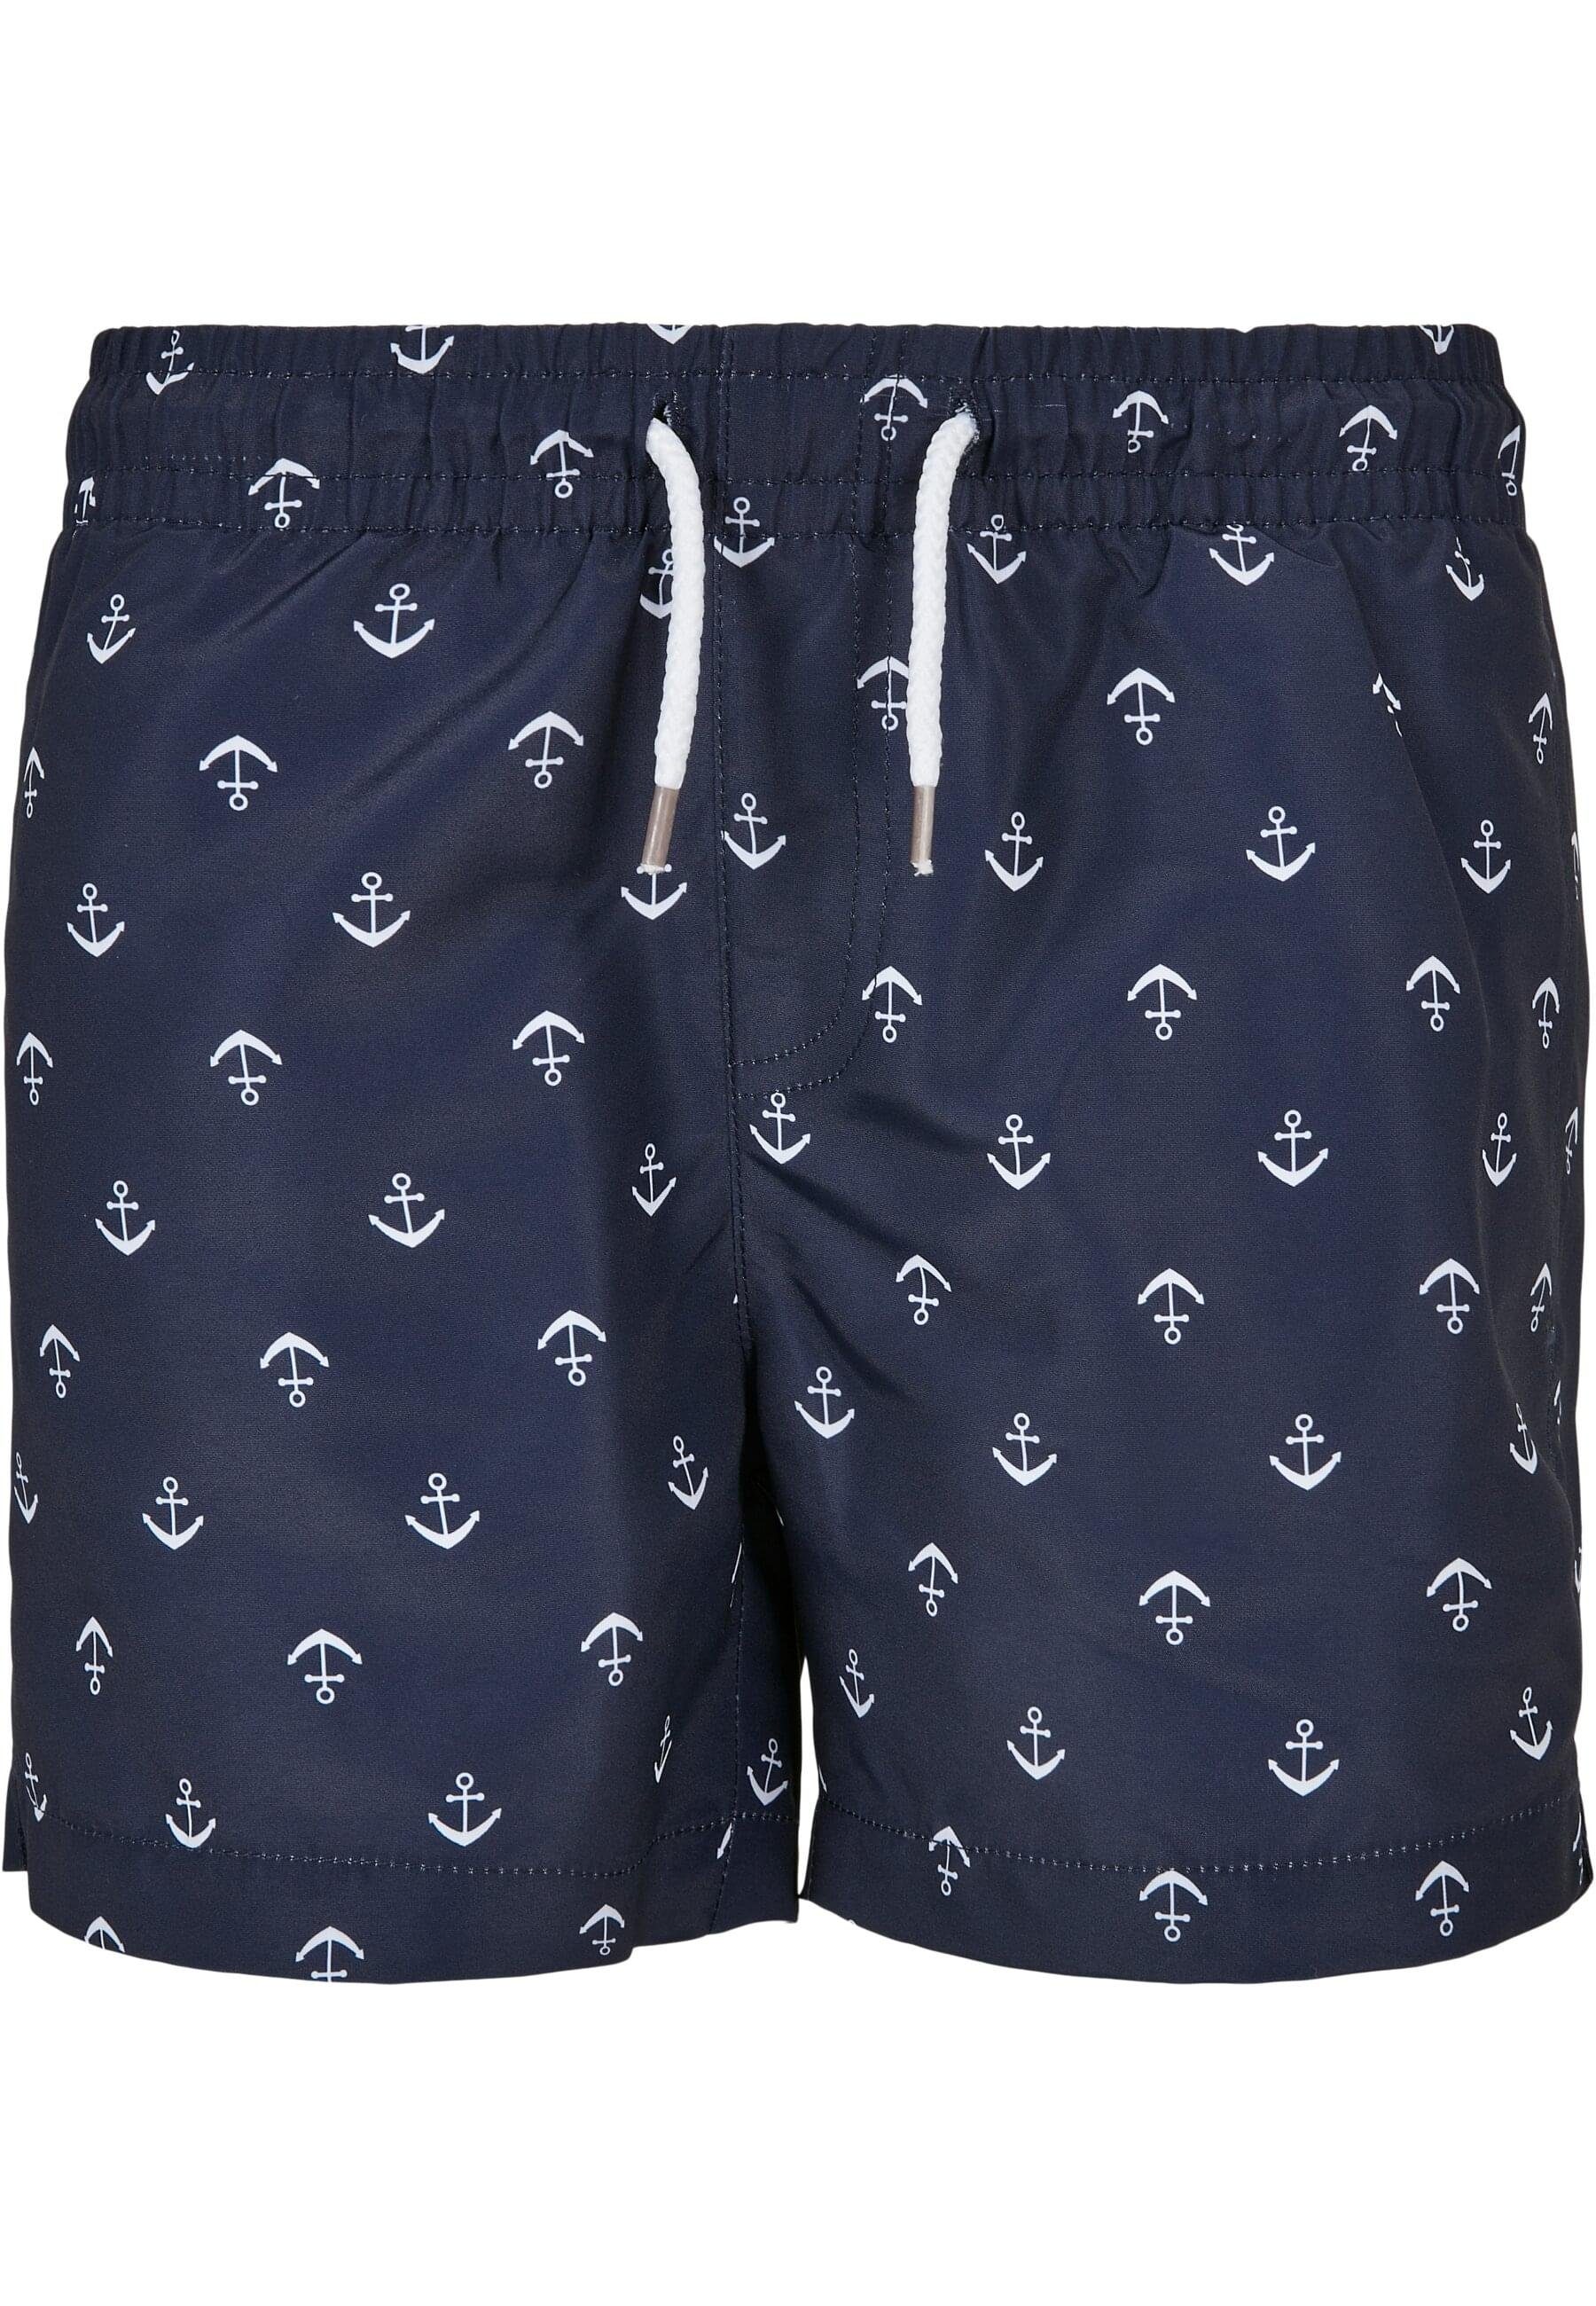 URBAN CLASSICS Badeshorts Boys Swim Herren anchor/navy Pattern Shorts